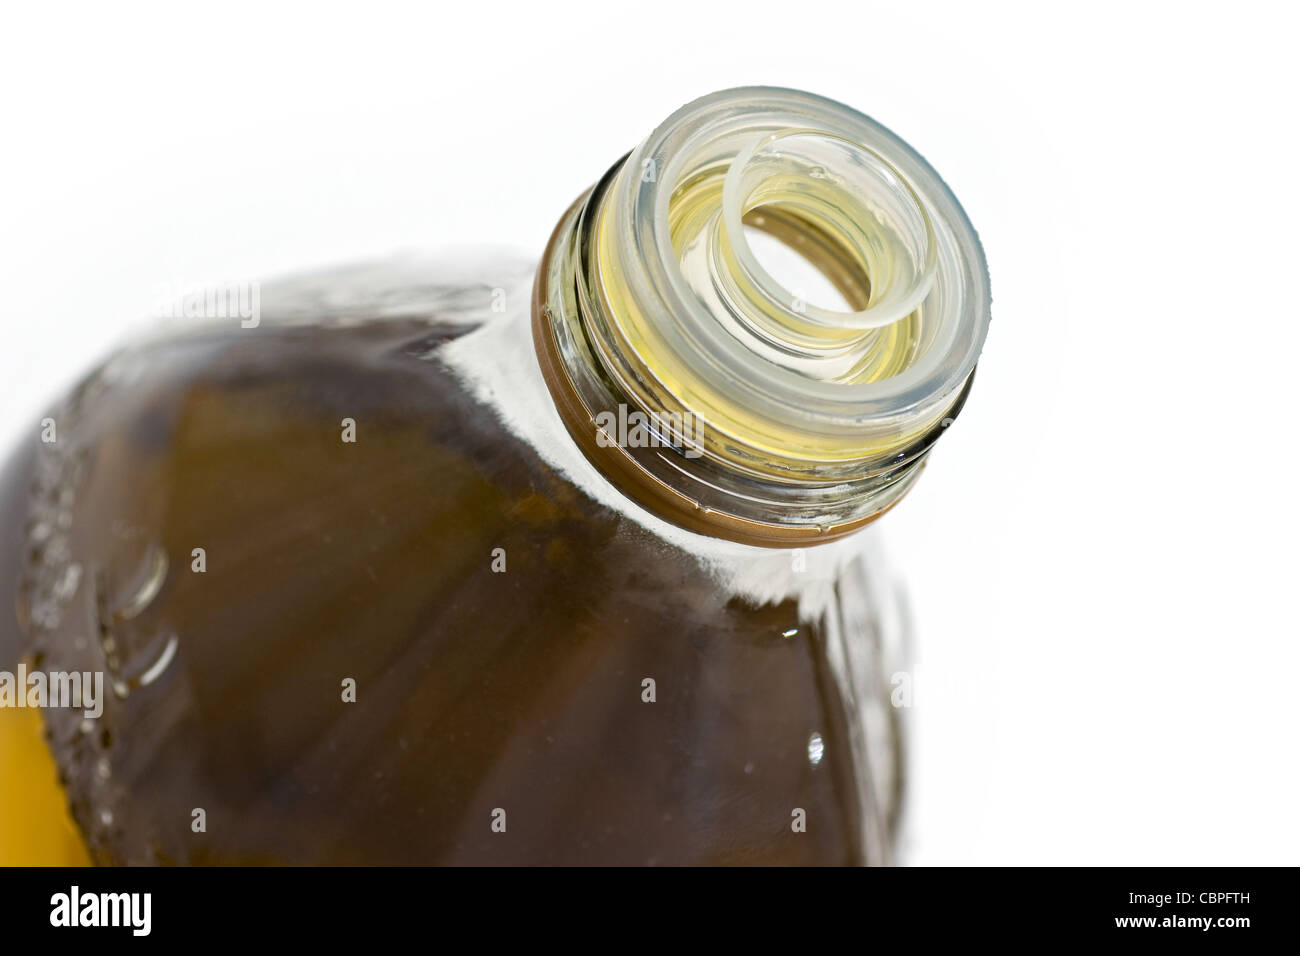 Olive oil bottle Stock Photo